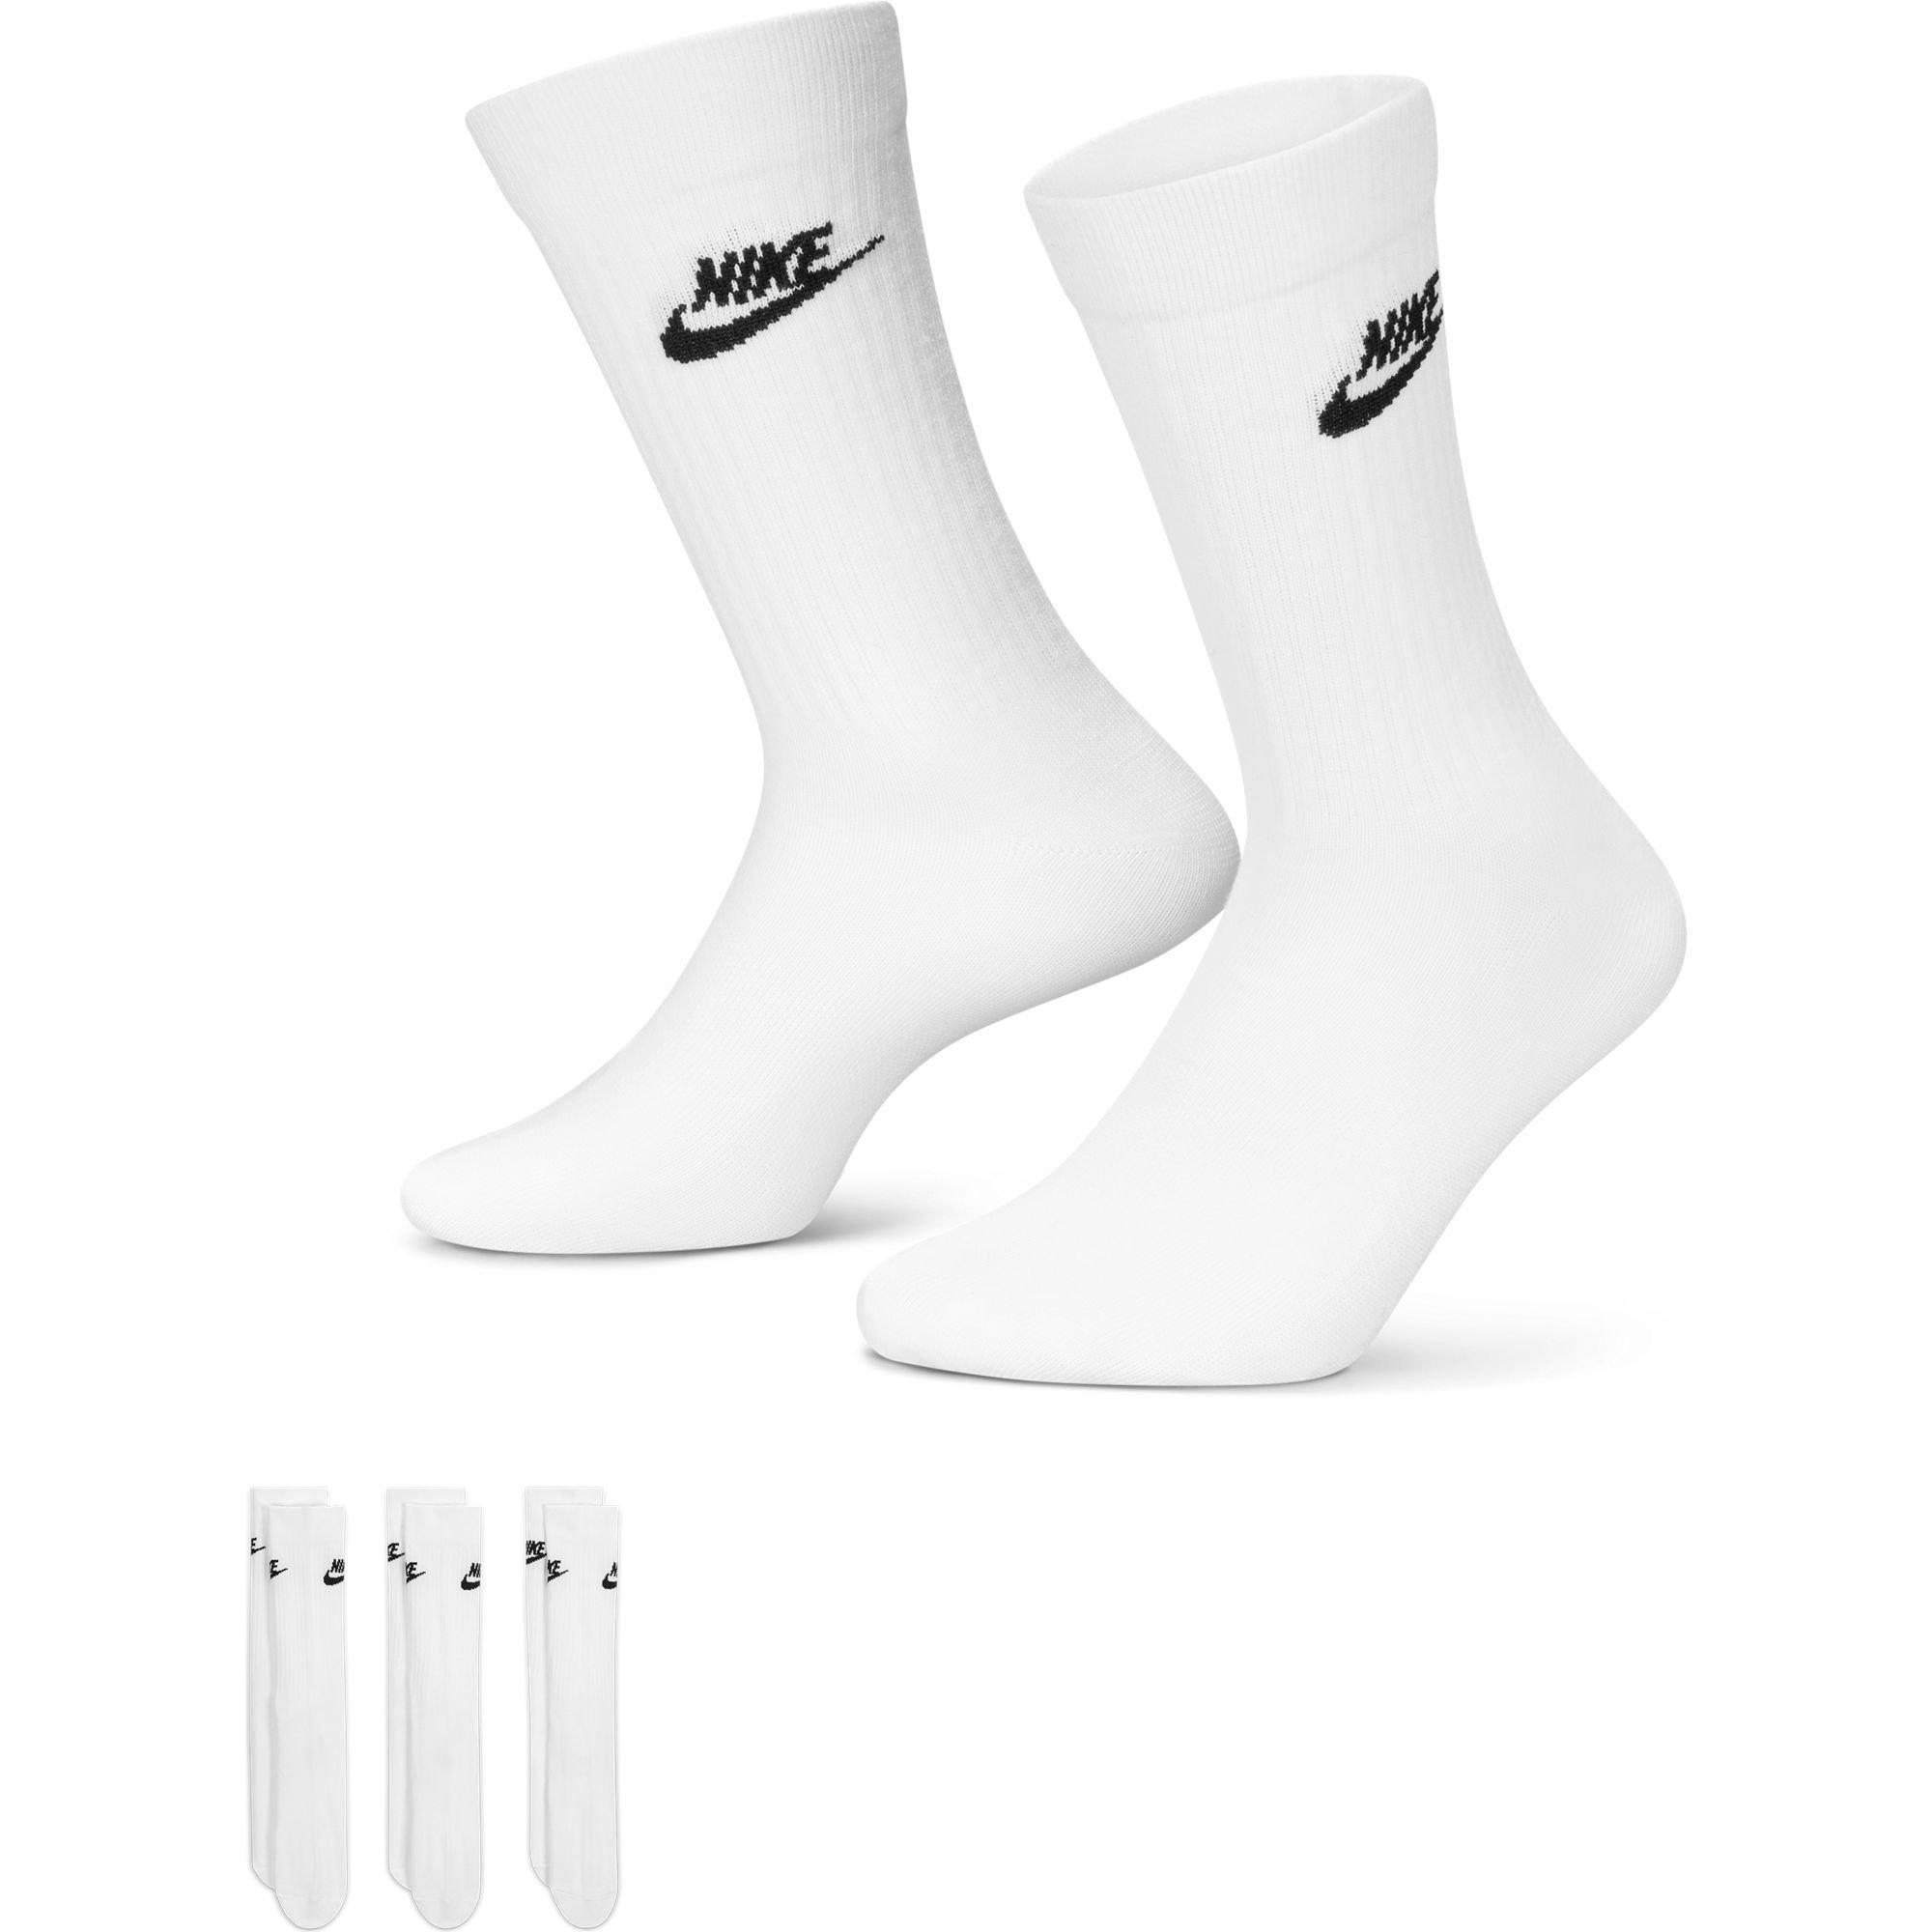 Nike Kids' Everyday Plus Cushioned Flower Crew Socks (3 Pairs)-Pink -  Hibbett